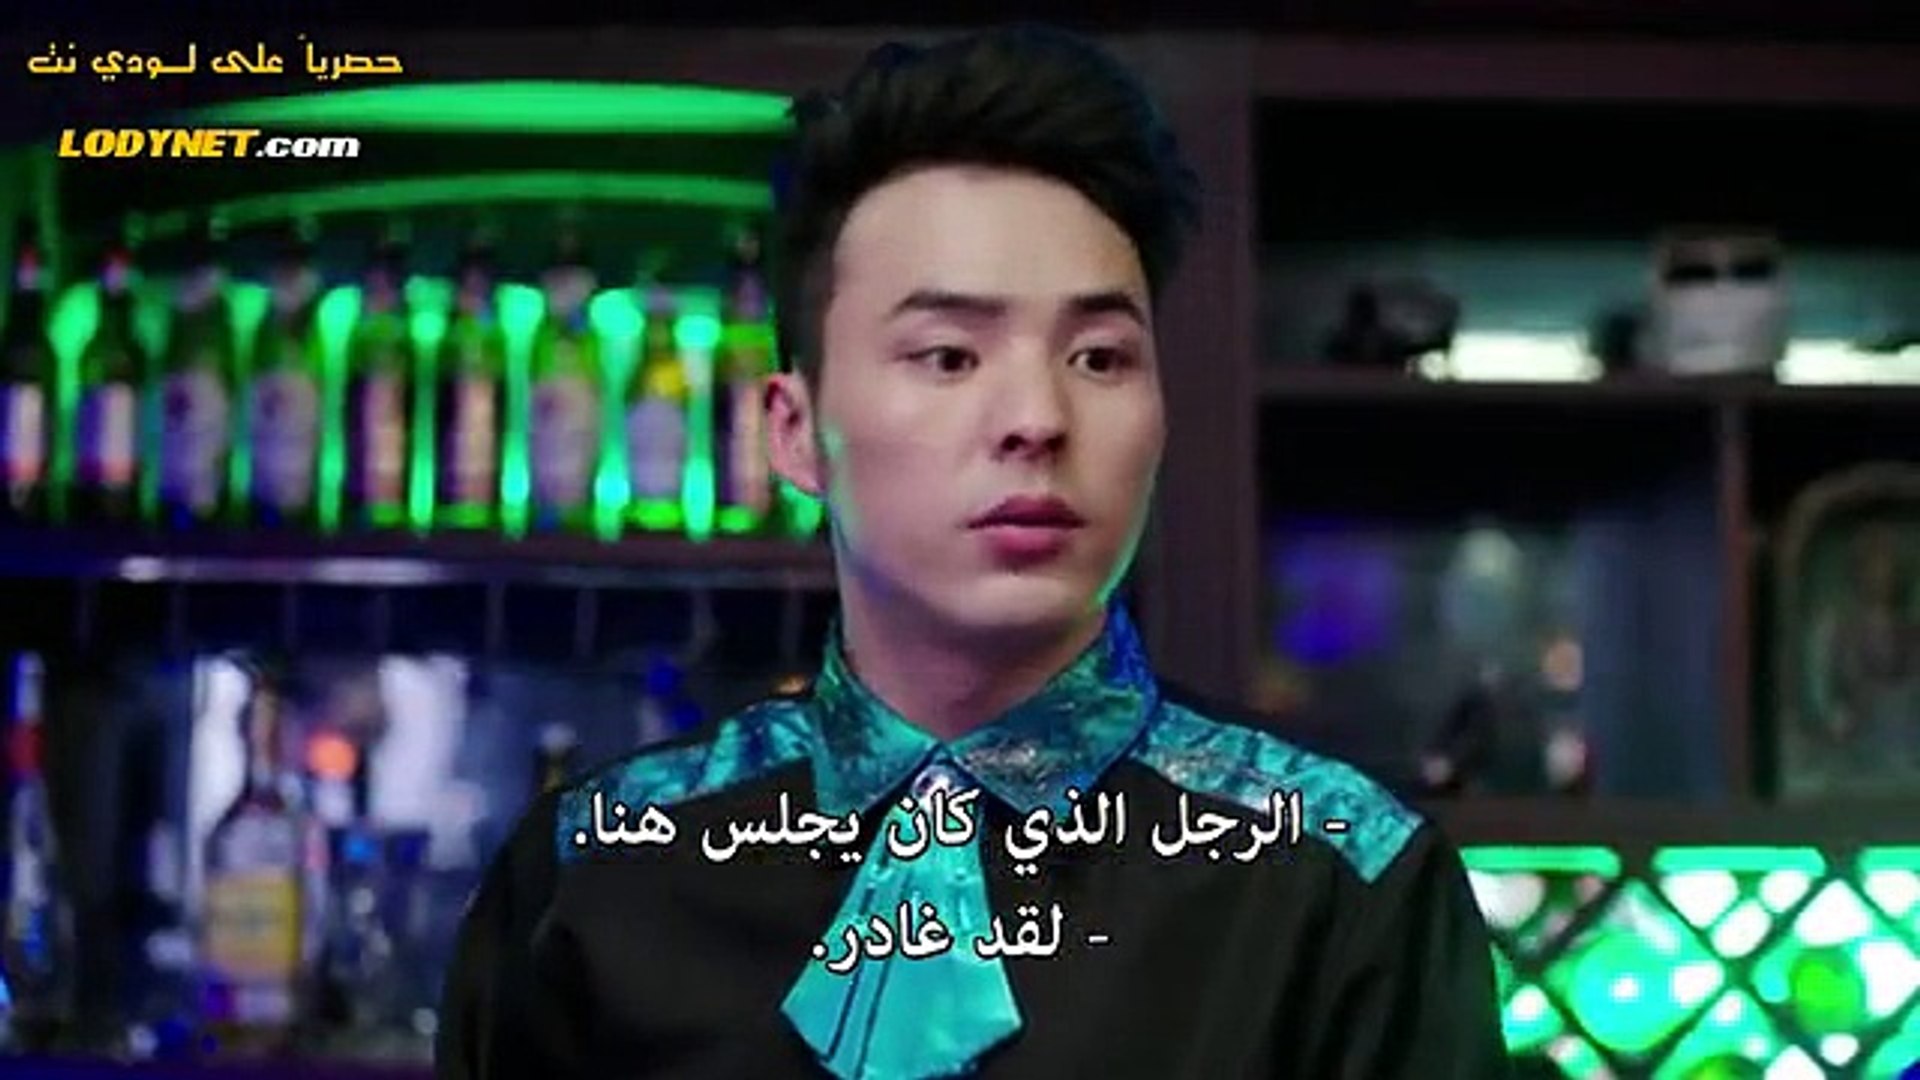 المسلسل الصيني الورثة الحلقة 4 مترجم بالعربي فيديو Dailymotion